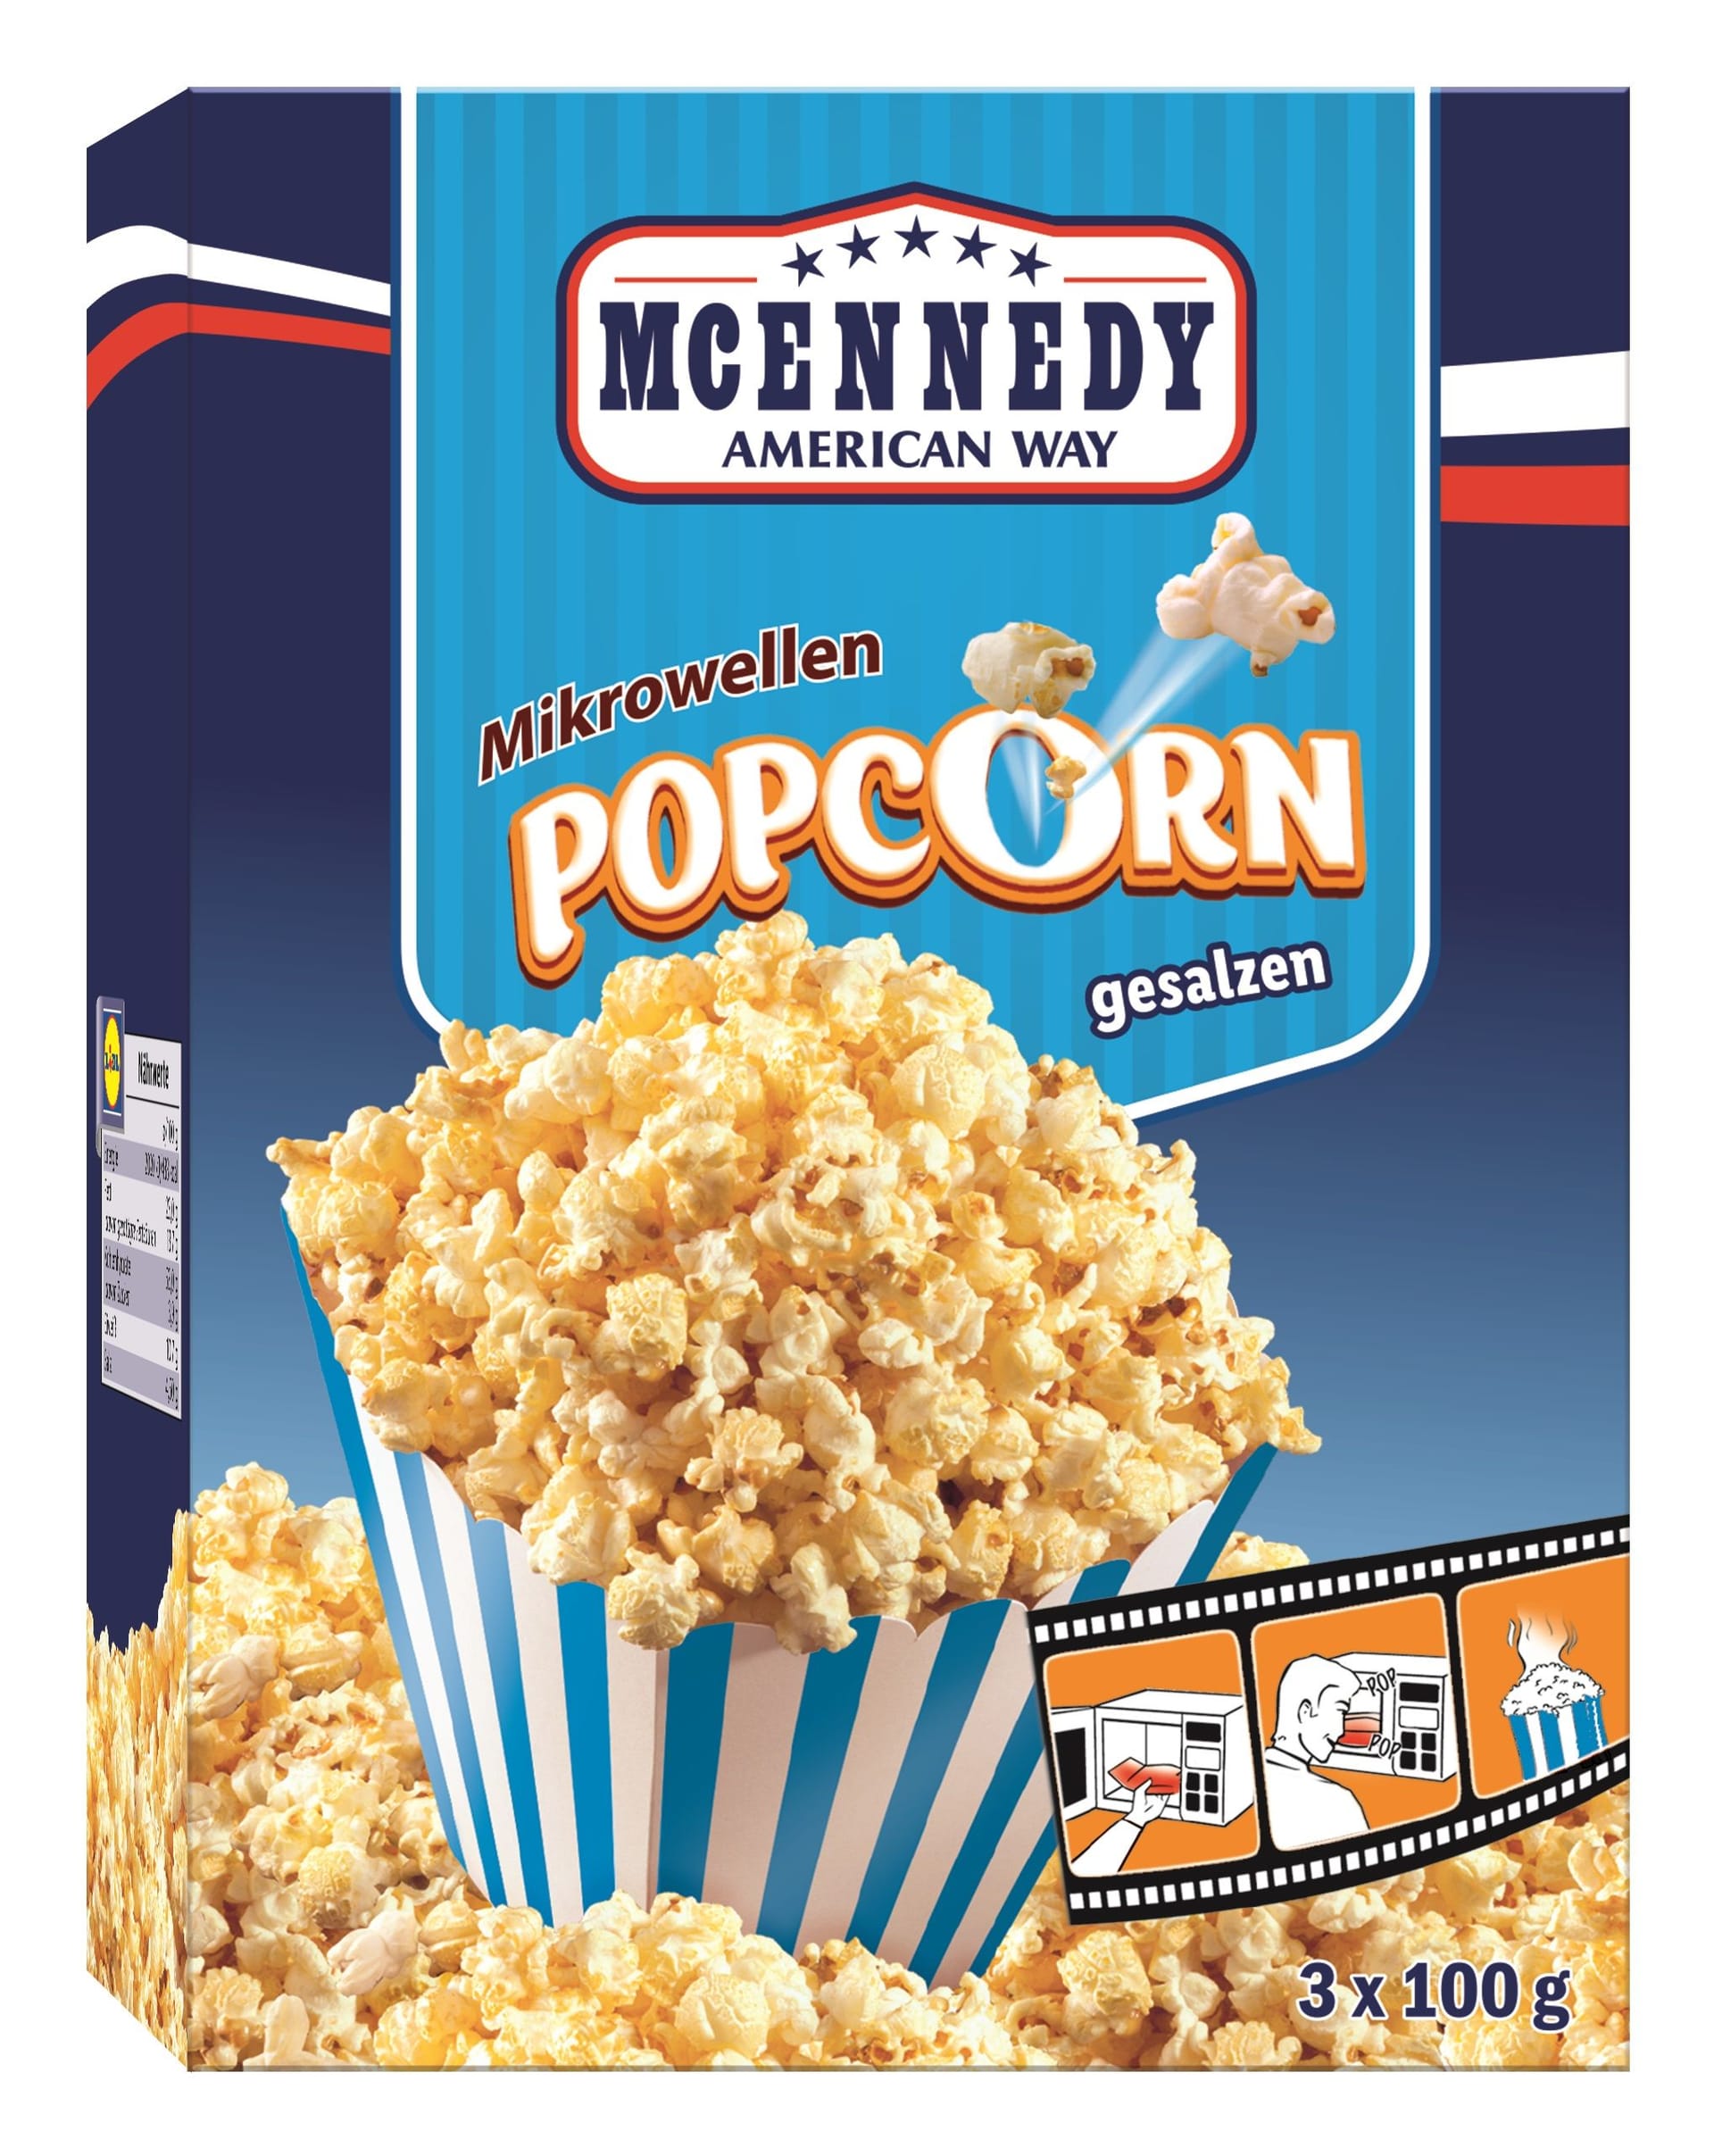 McEnnedy Popcorn wird zurückgerufen